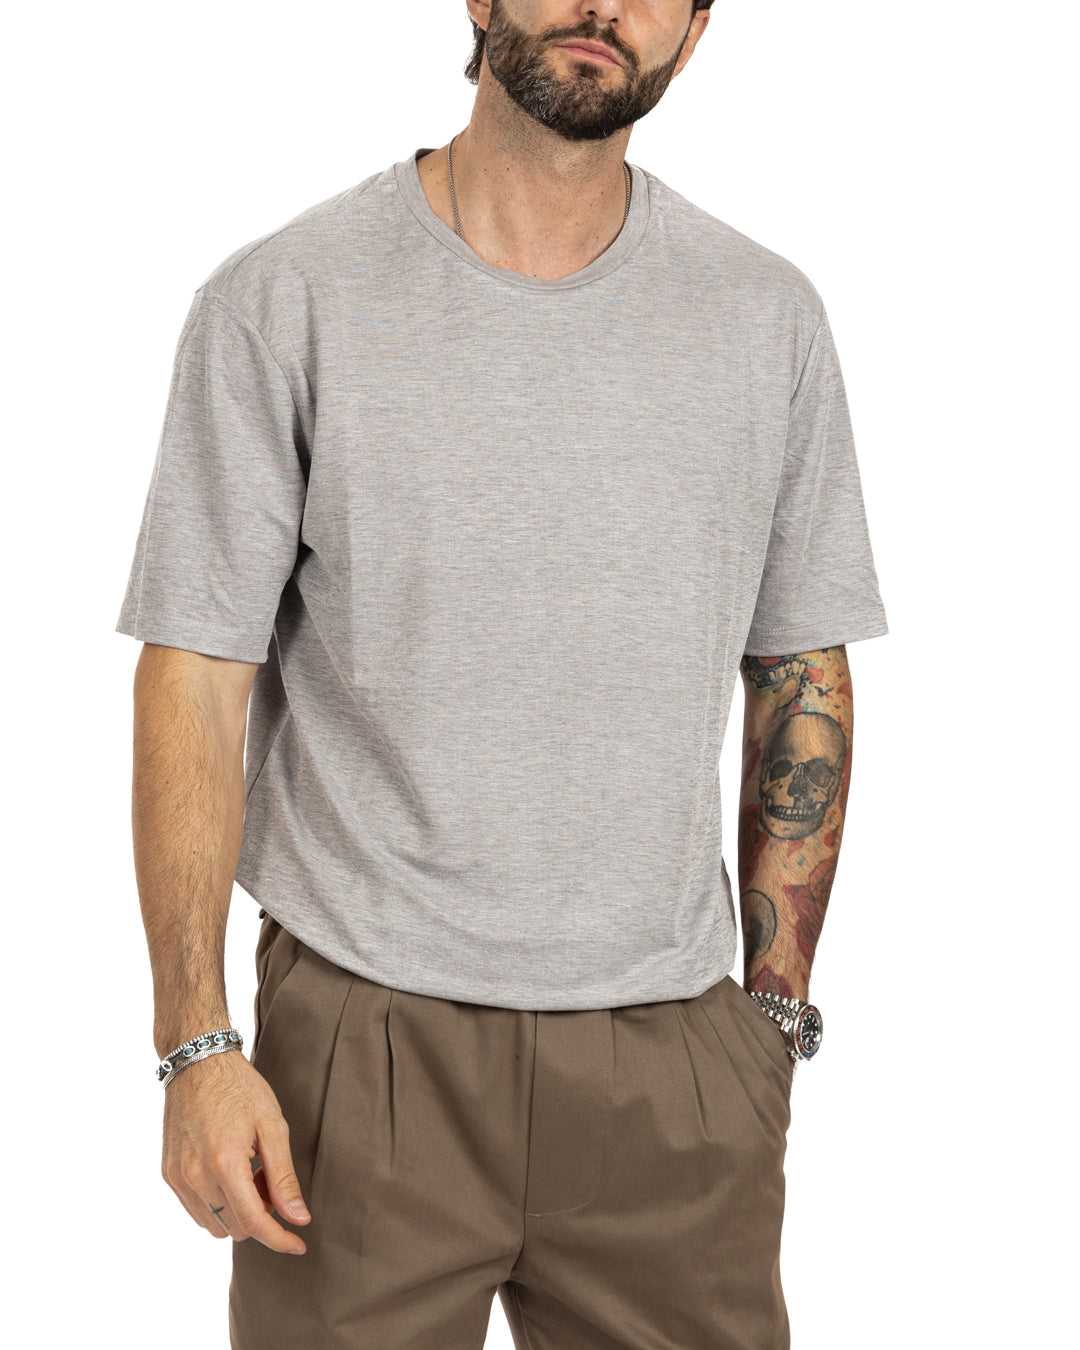 Tee - t-shirt texturé basique gris